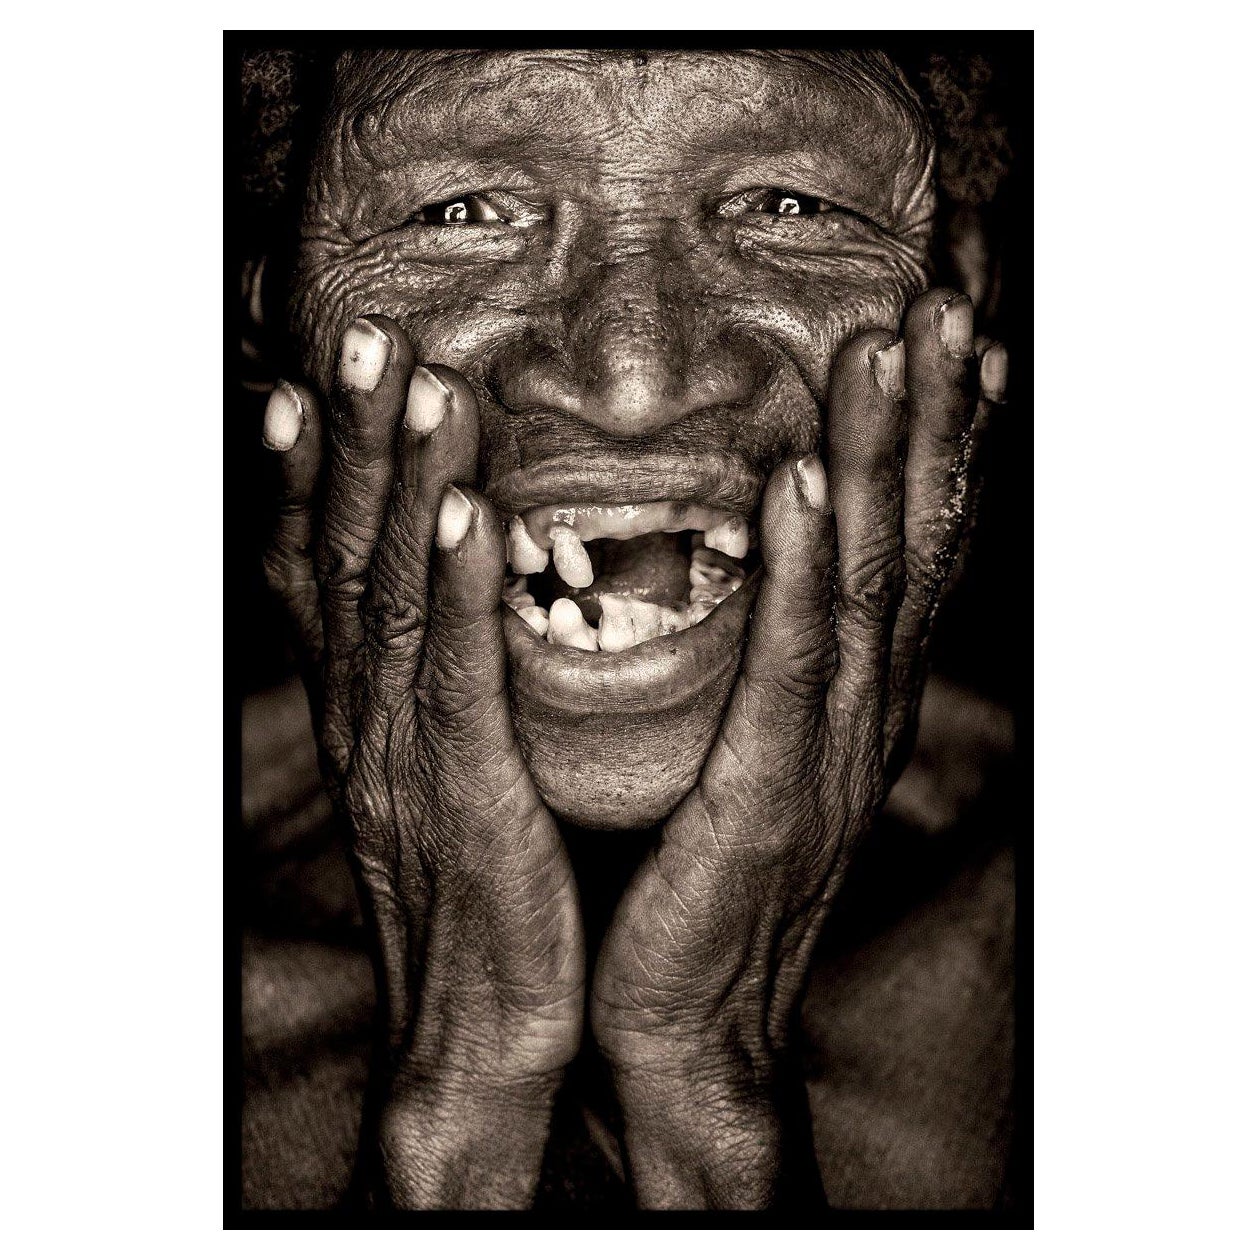 Ein Bild der Freude.   KhoiSan-Buschmann aus Namibia

John Kennys Arbeiten werden alle vor Ort in einigen der entlegensten Ecken Afrikas gedreht. Seine Bilder werden alle mit natürlichem Licht und in der Alltagskleidung seiner Motive